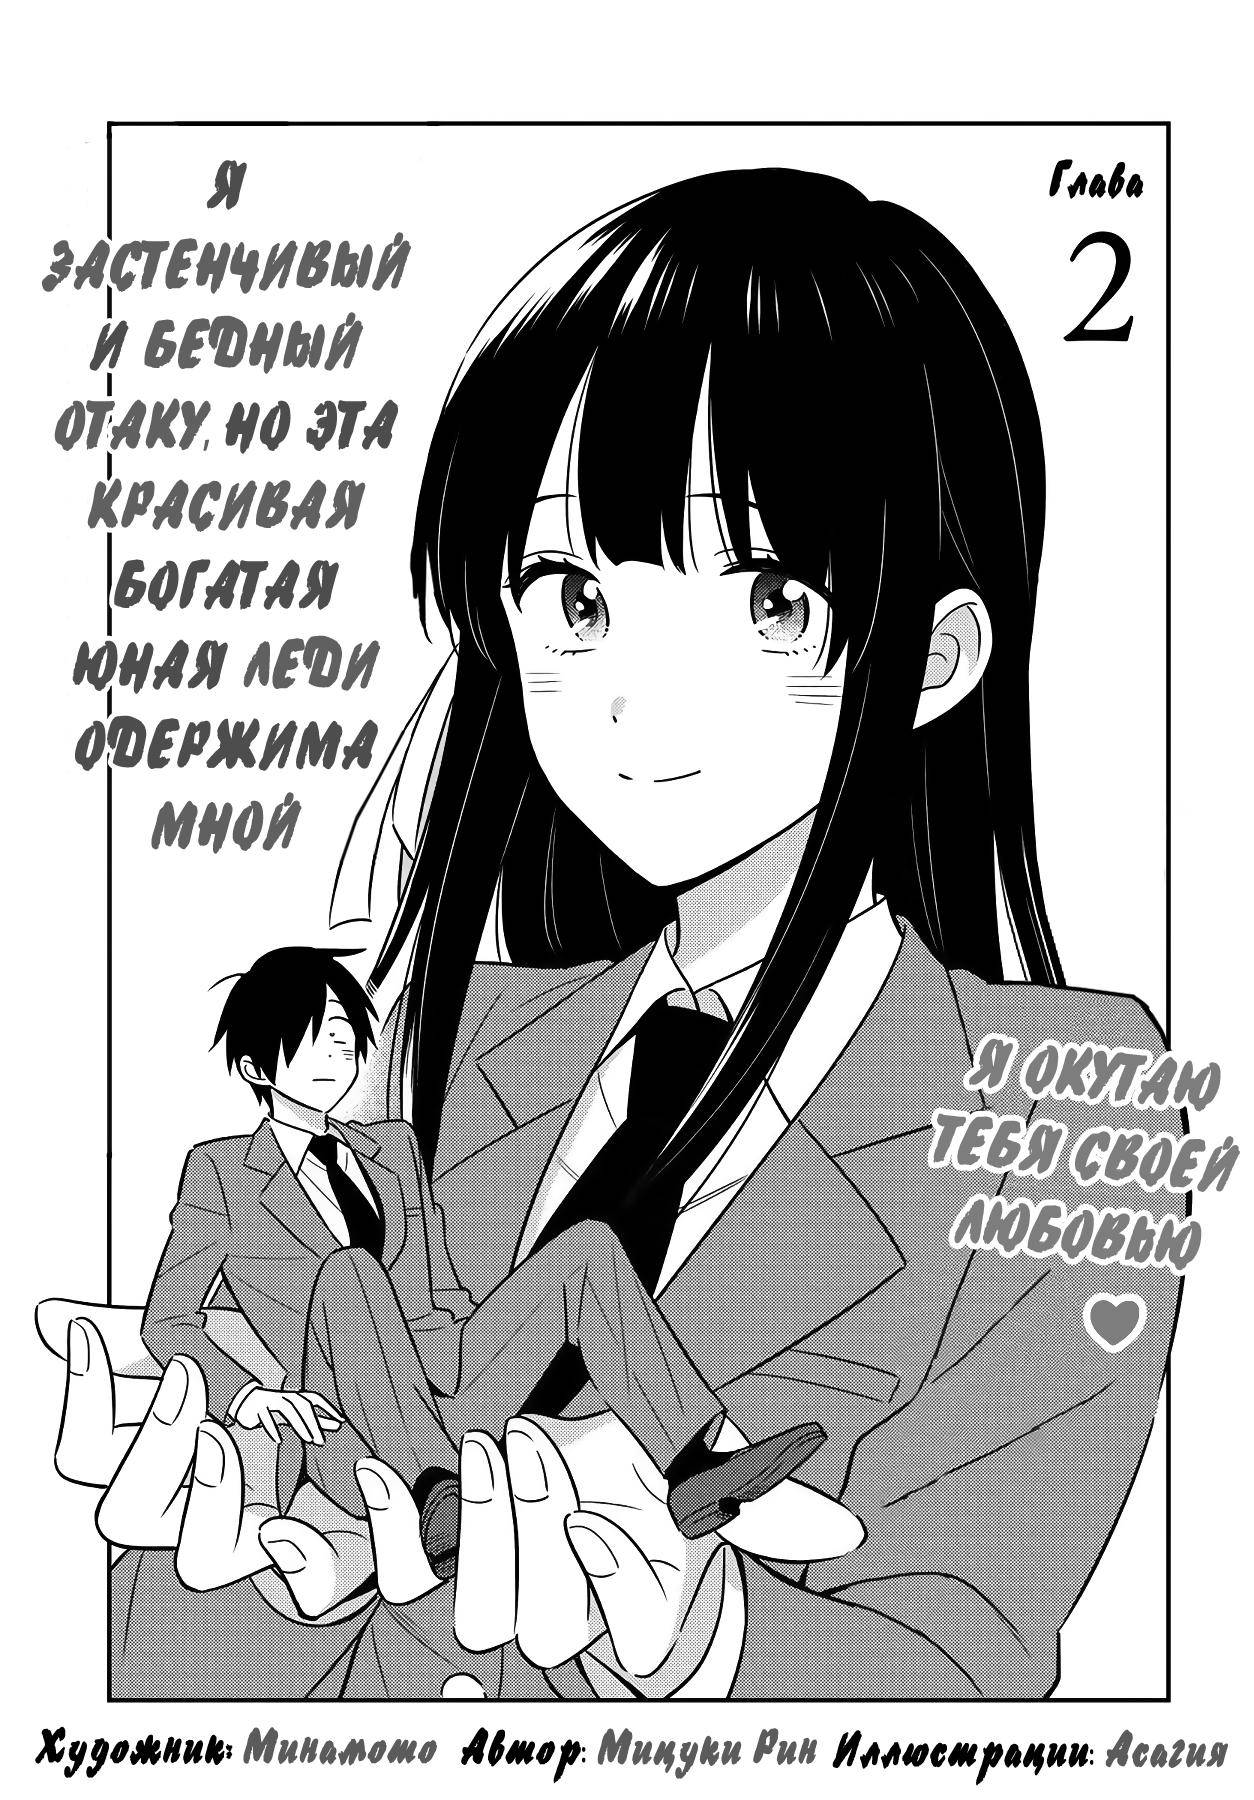 Манга семья моего мужа одержимы мной. Застенчивый и бедный отаку, но эта красивая богатая 5. Читать мангу эта офисная леди одержима. I'M A shy and poor Otaku Chapter 2 Manga.